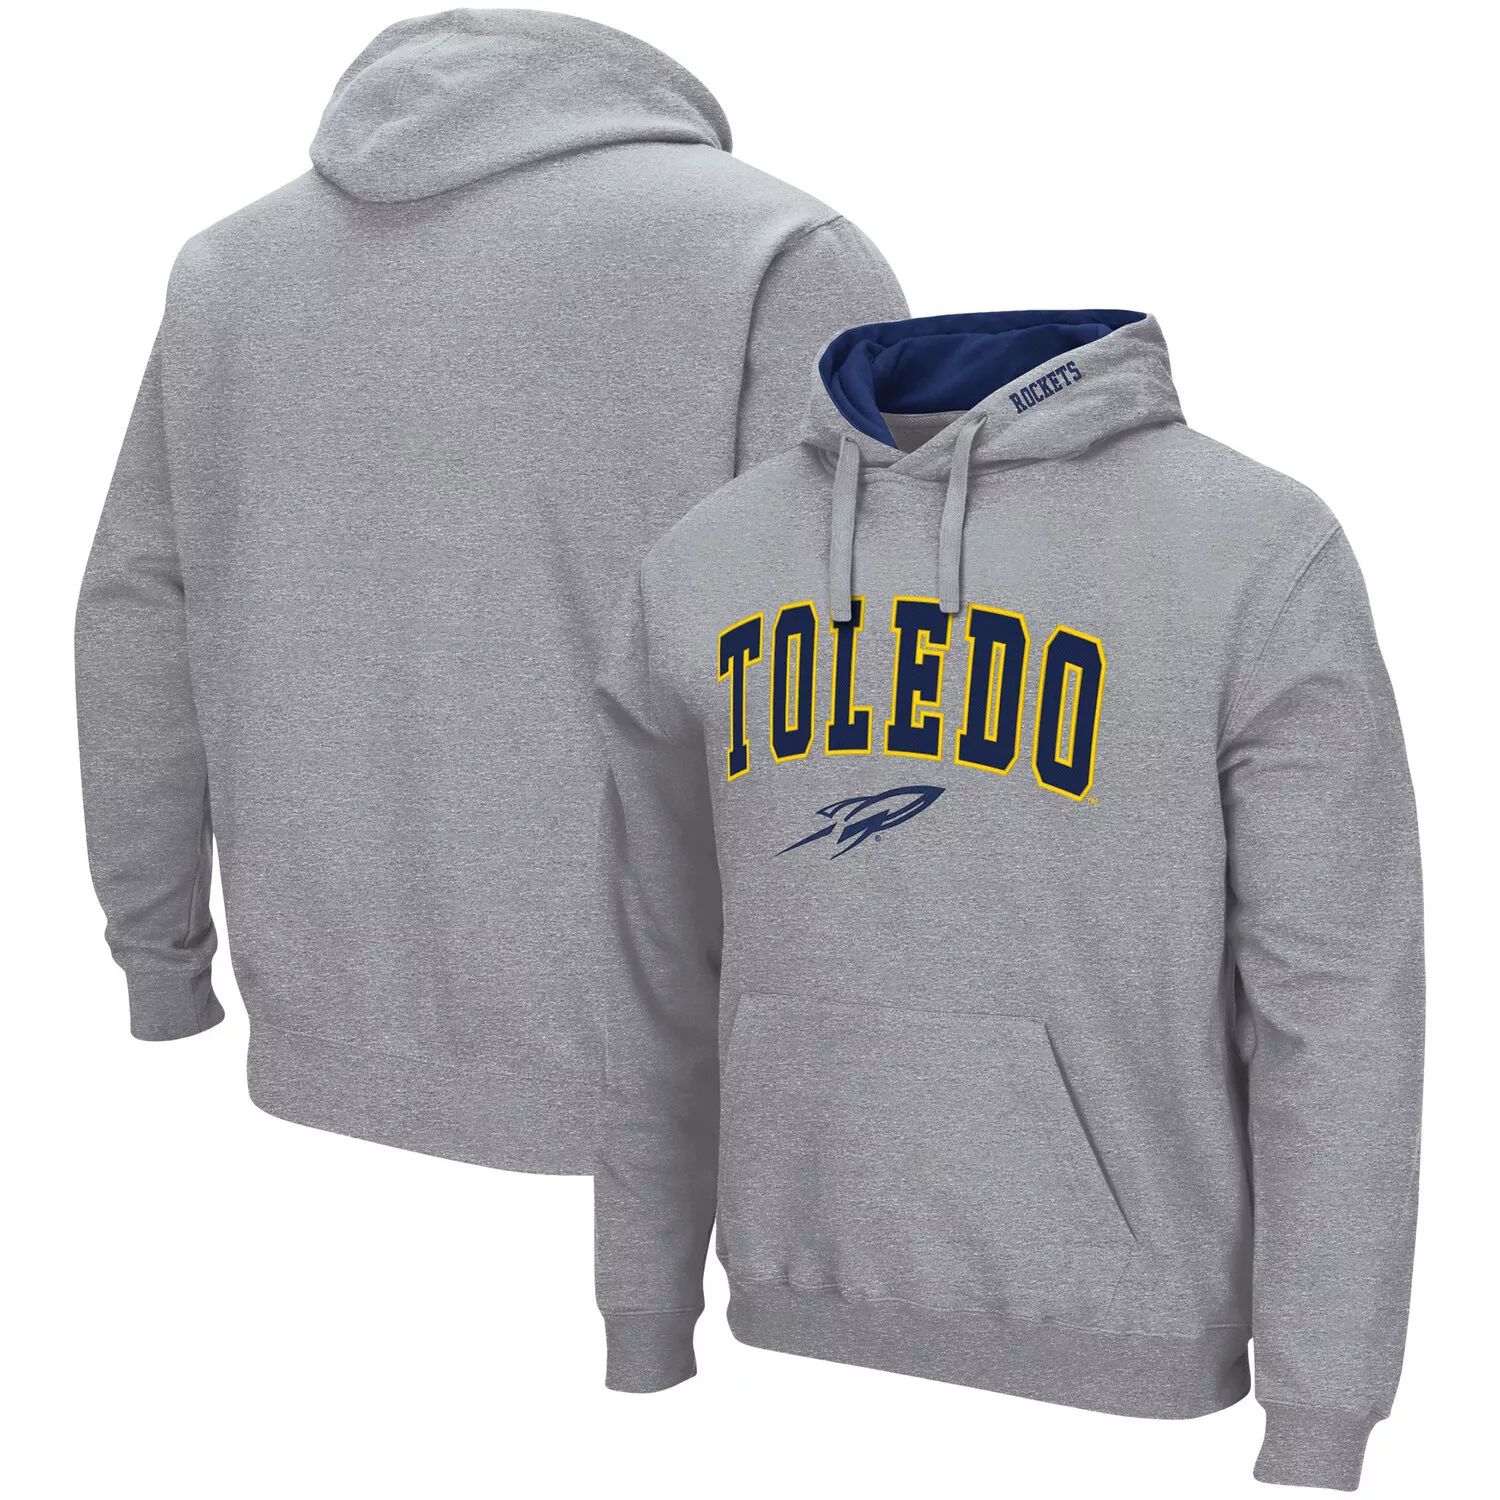 Мужской серый пуловер с капюшоном Toledo Rockets Arch и Logo Colosseum